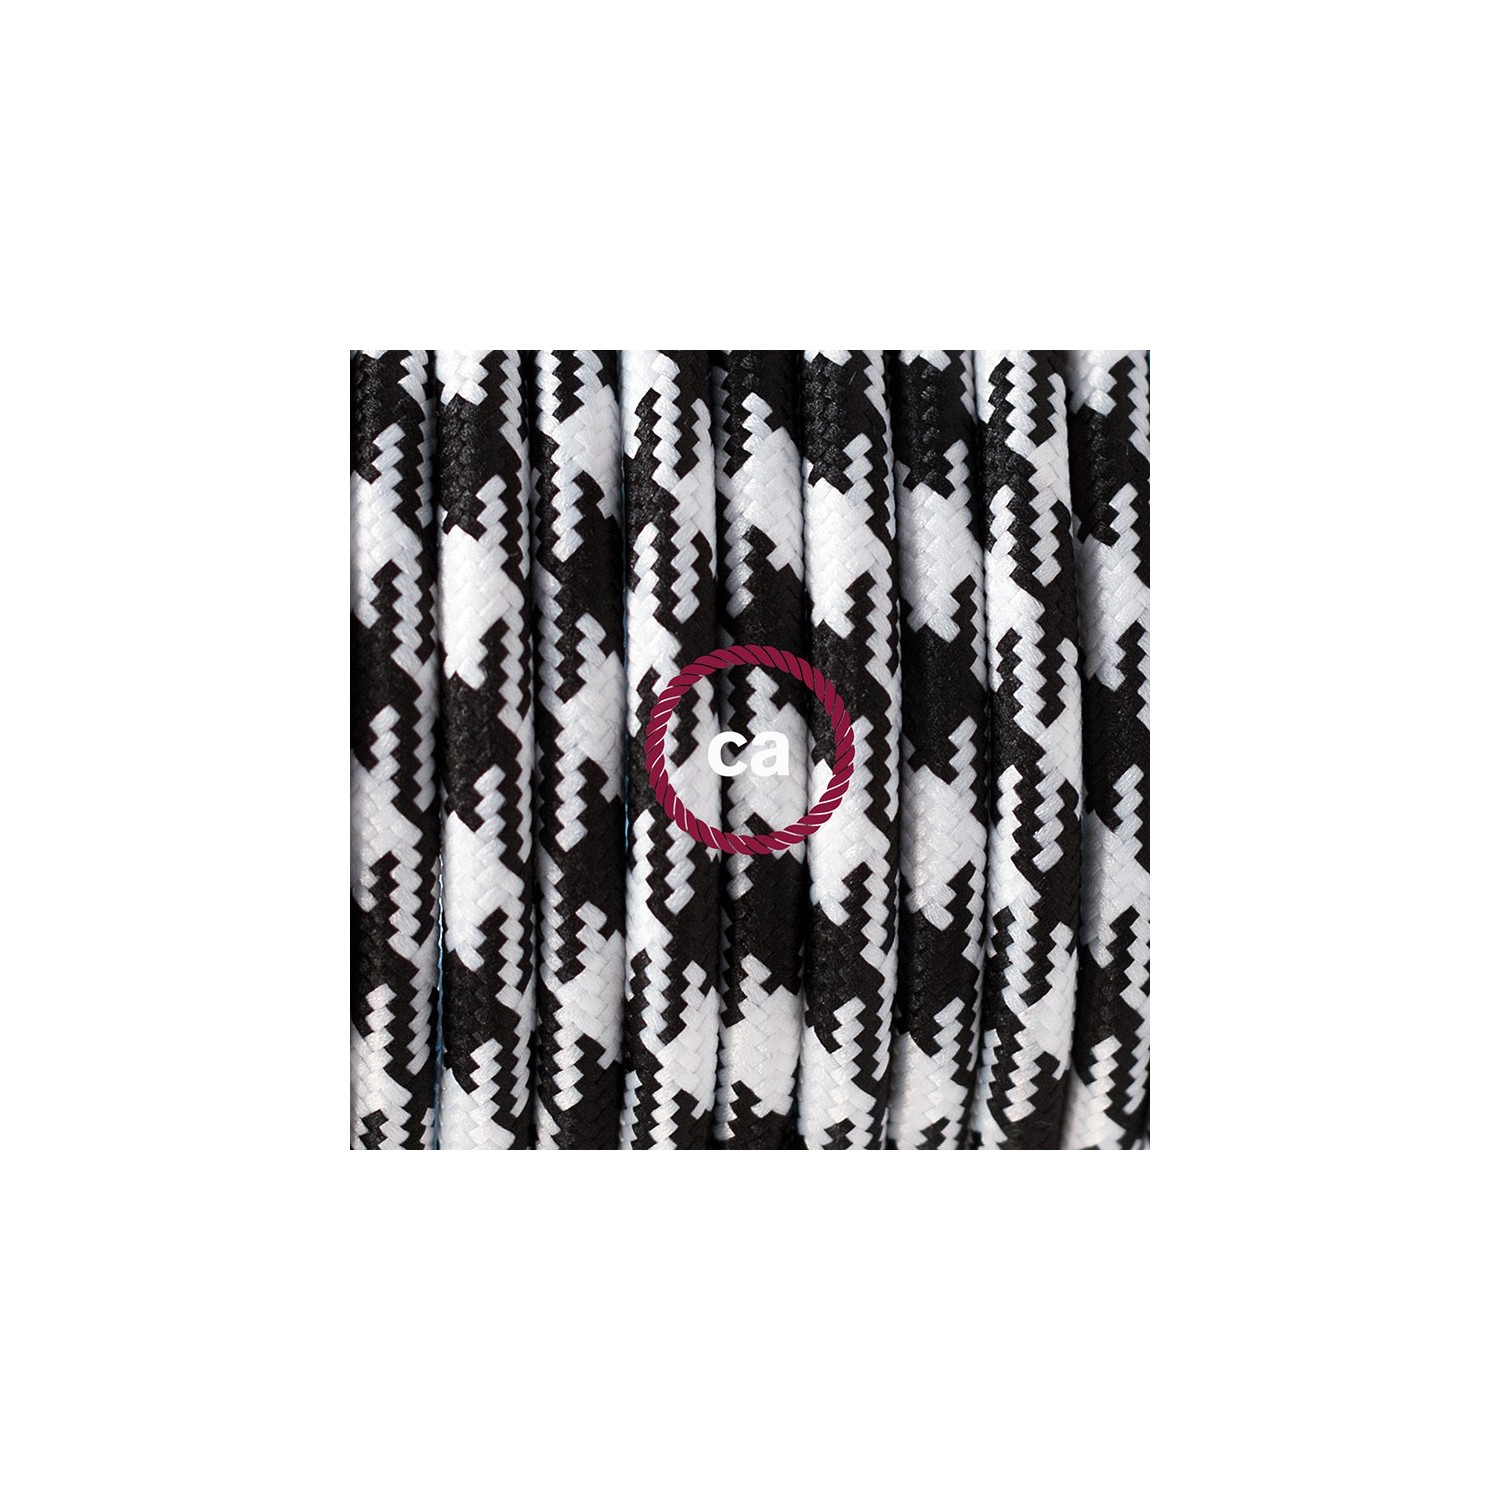 Zuleitung für Tischleuchten RP04 Bifarbig Weiß Schwarz Seideneffekt 1,80 m. Wählen Sie aus drei Farben bei Schalter und Stecke.